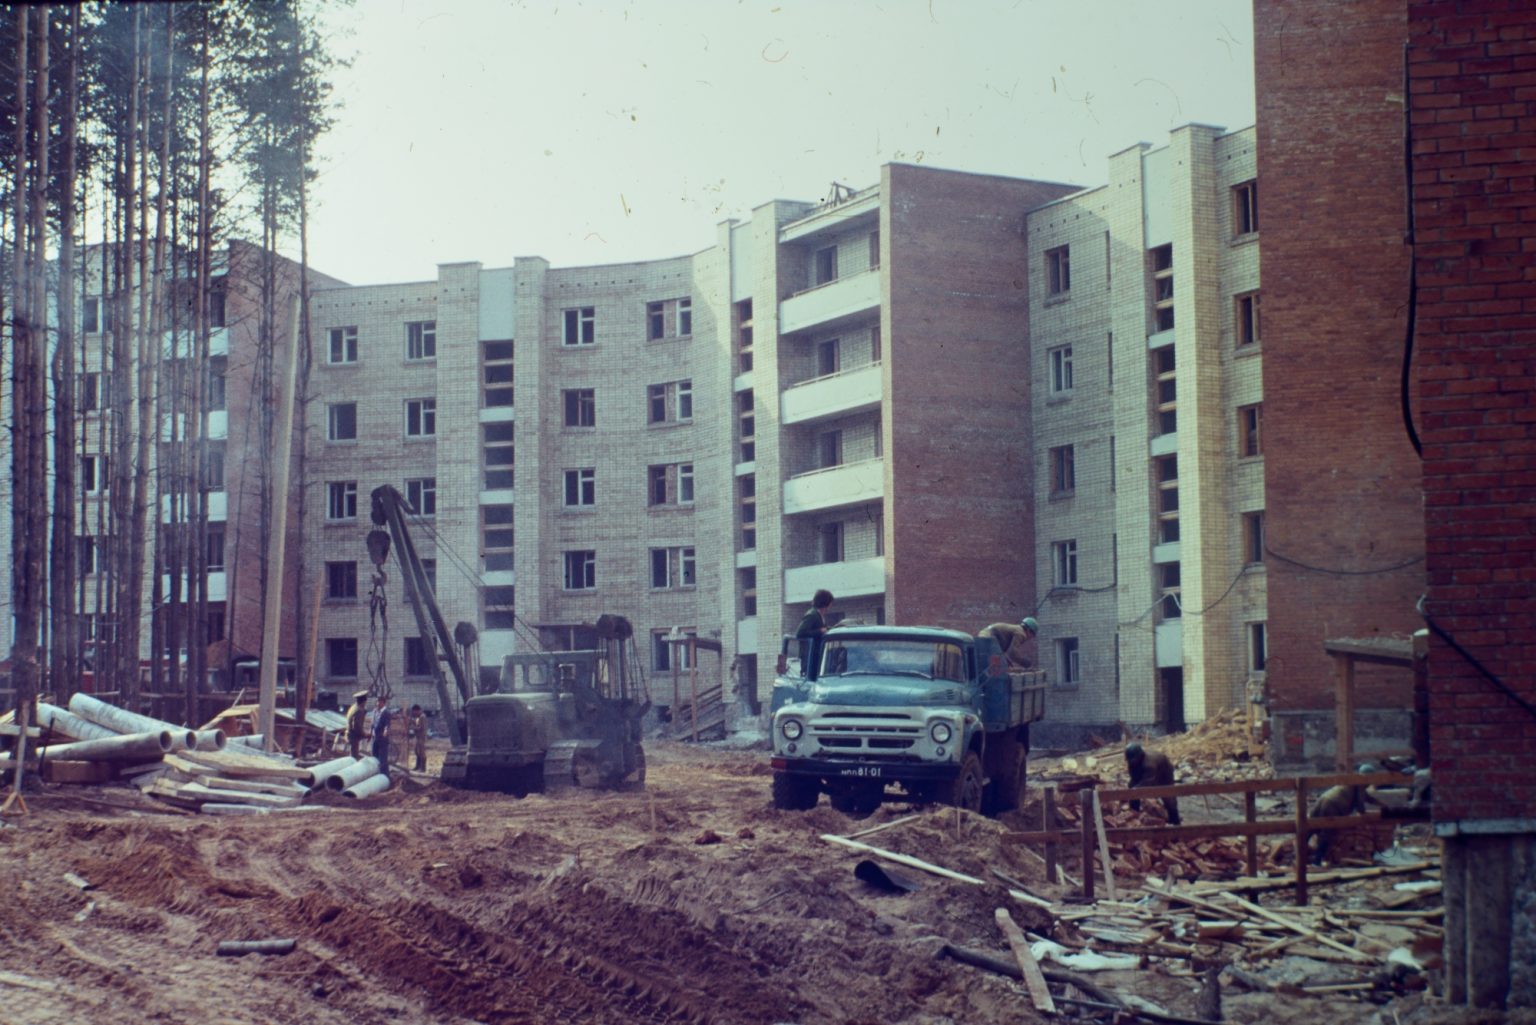 Gyvenamųjų namų komplekso statyba Parko gatvėje. 1979 m. Vasilijaus Čiupačenko nuotr.